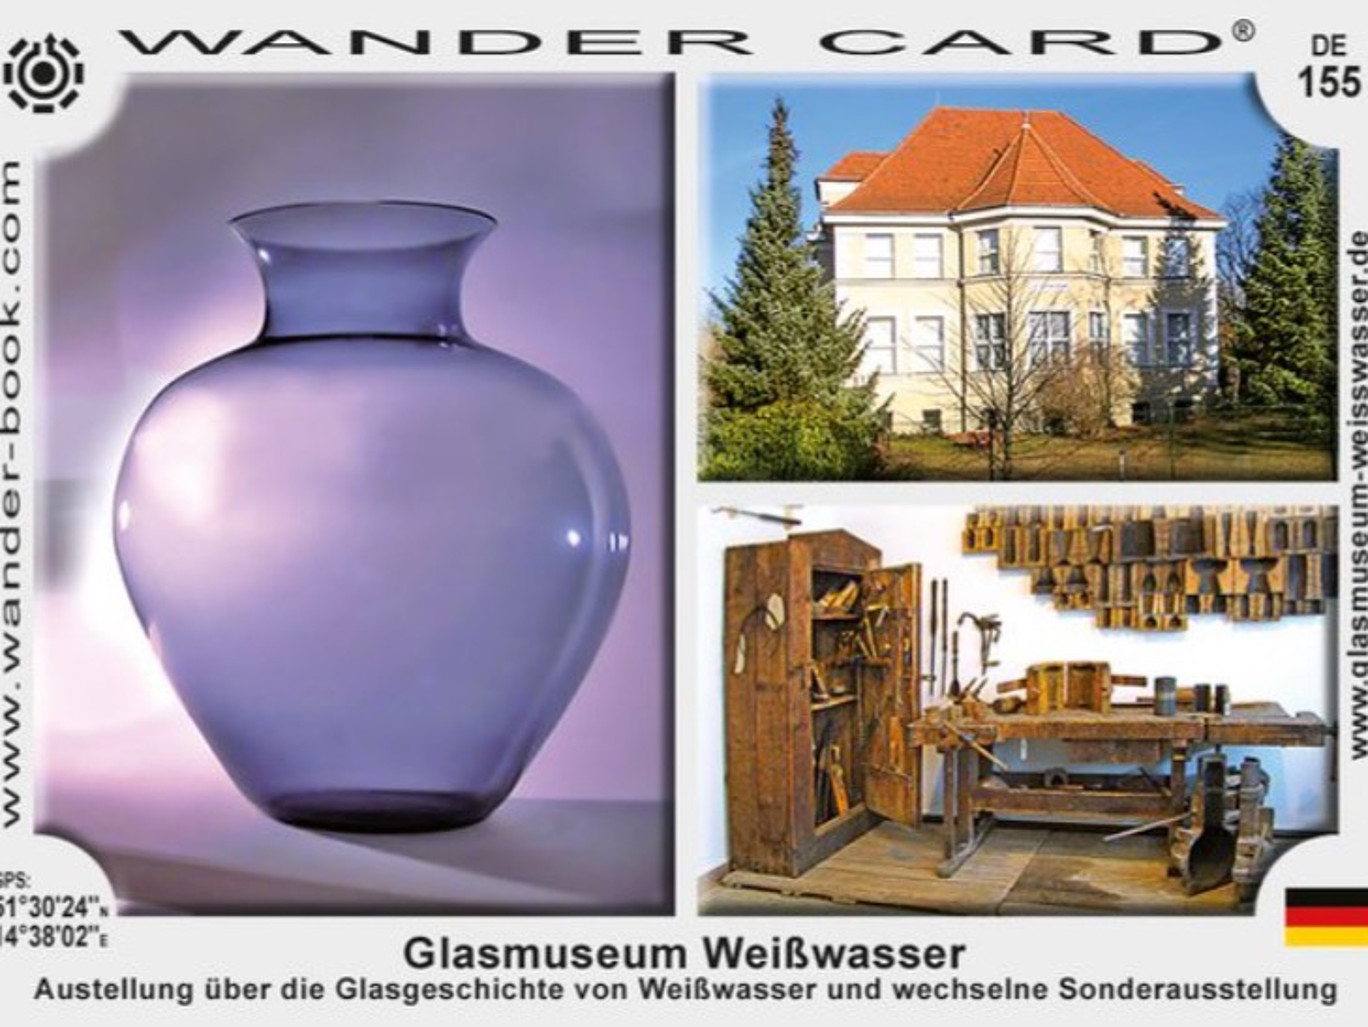 Bild vom Glasmuseum Weißwasser